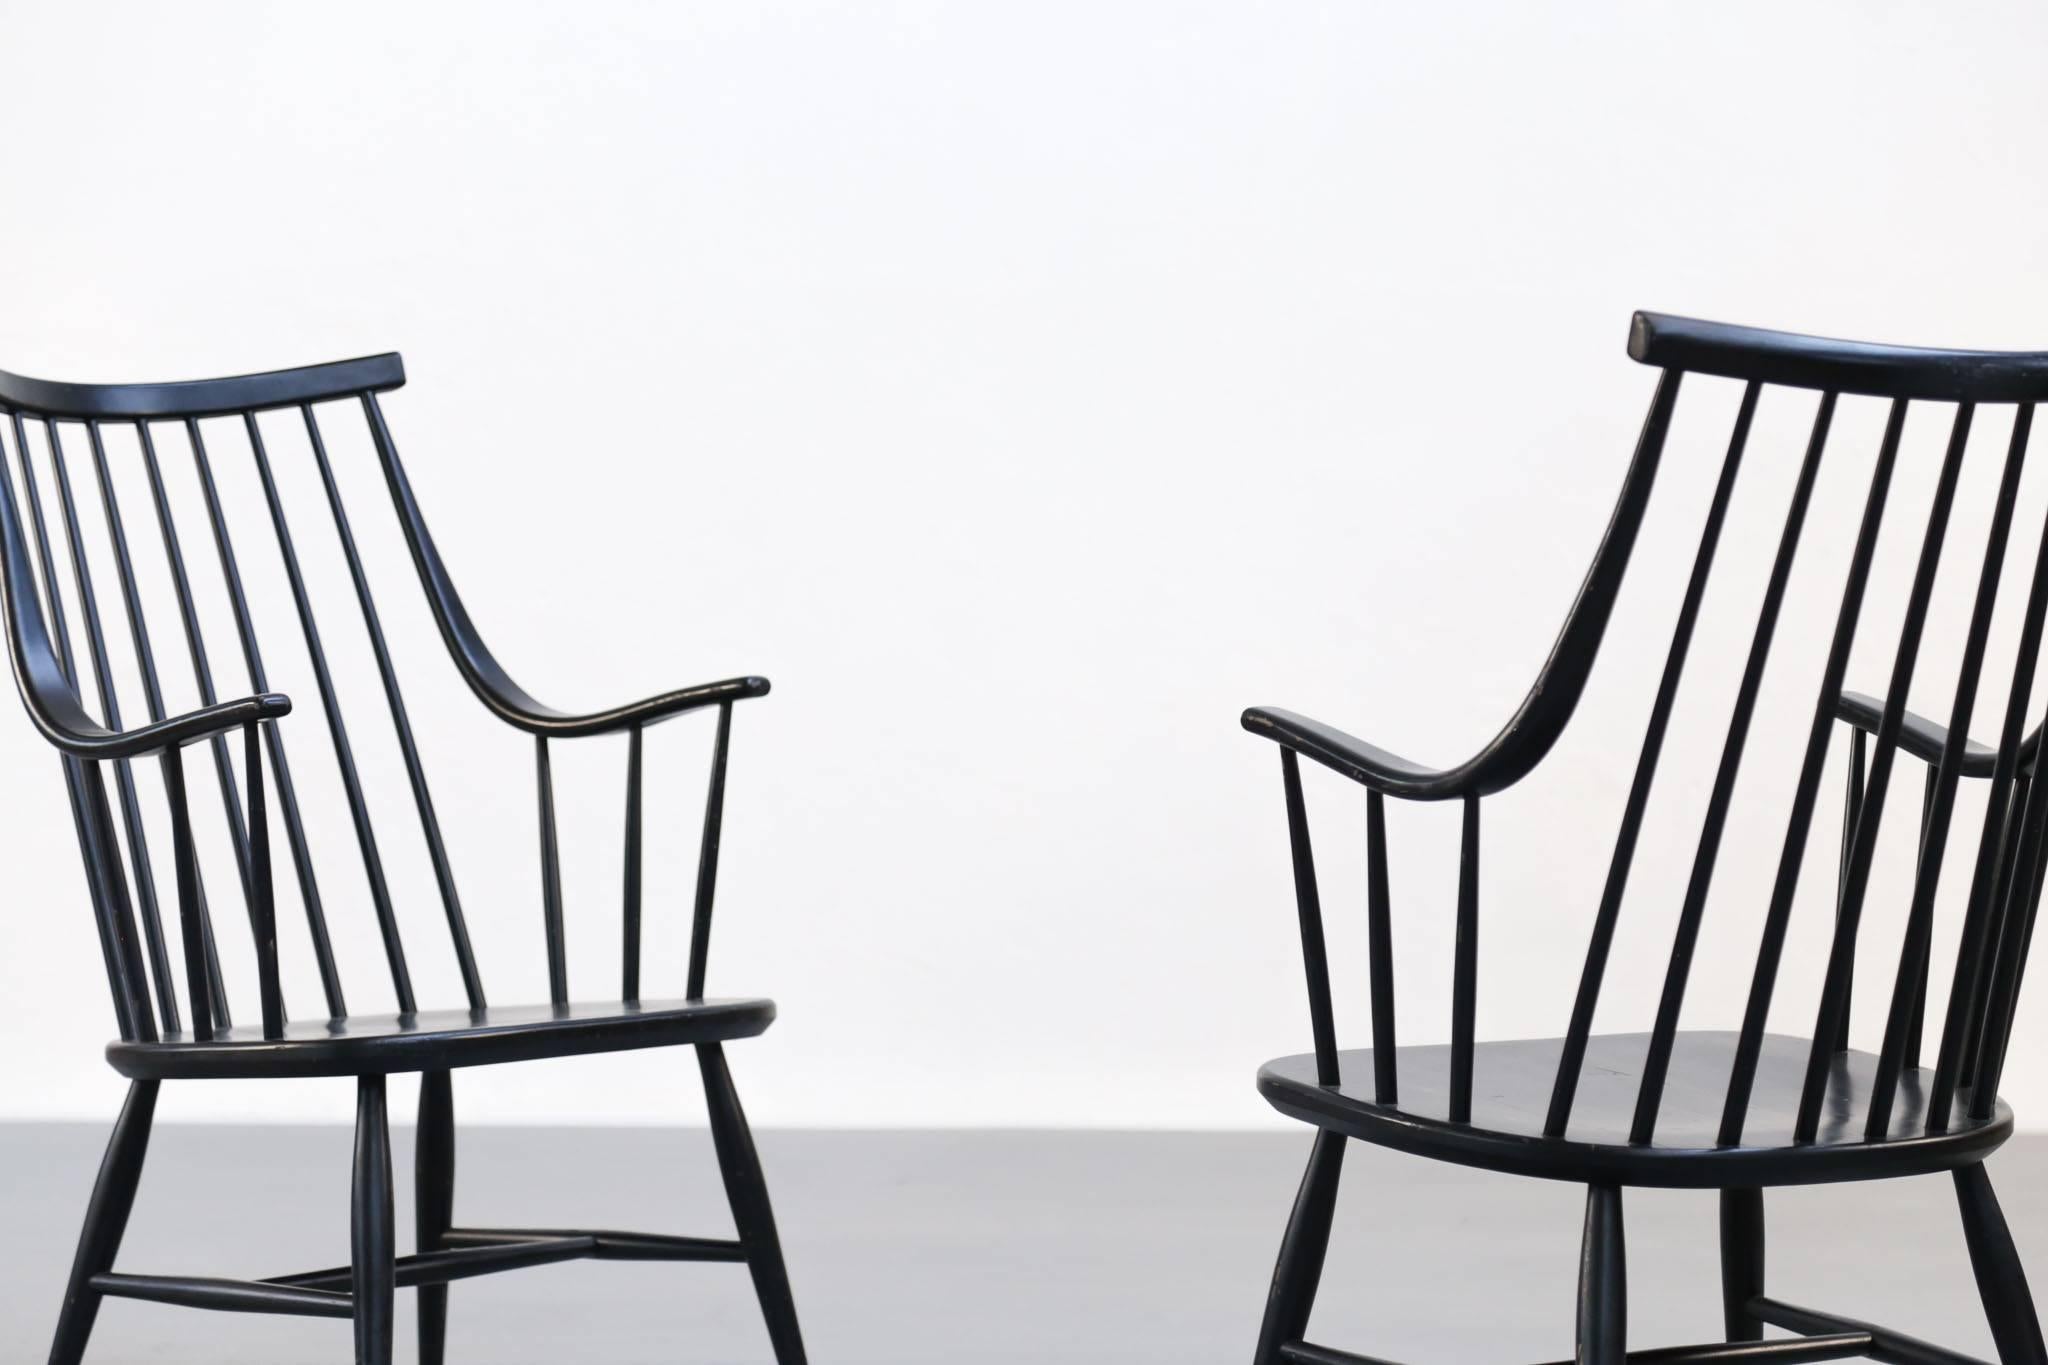 Satz von zwei Stühlen, entworfen von Lena Larsson, Schweden.
Hergestellt aus Holz, schwarz lackiert.